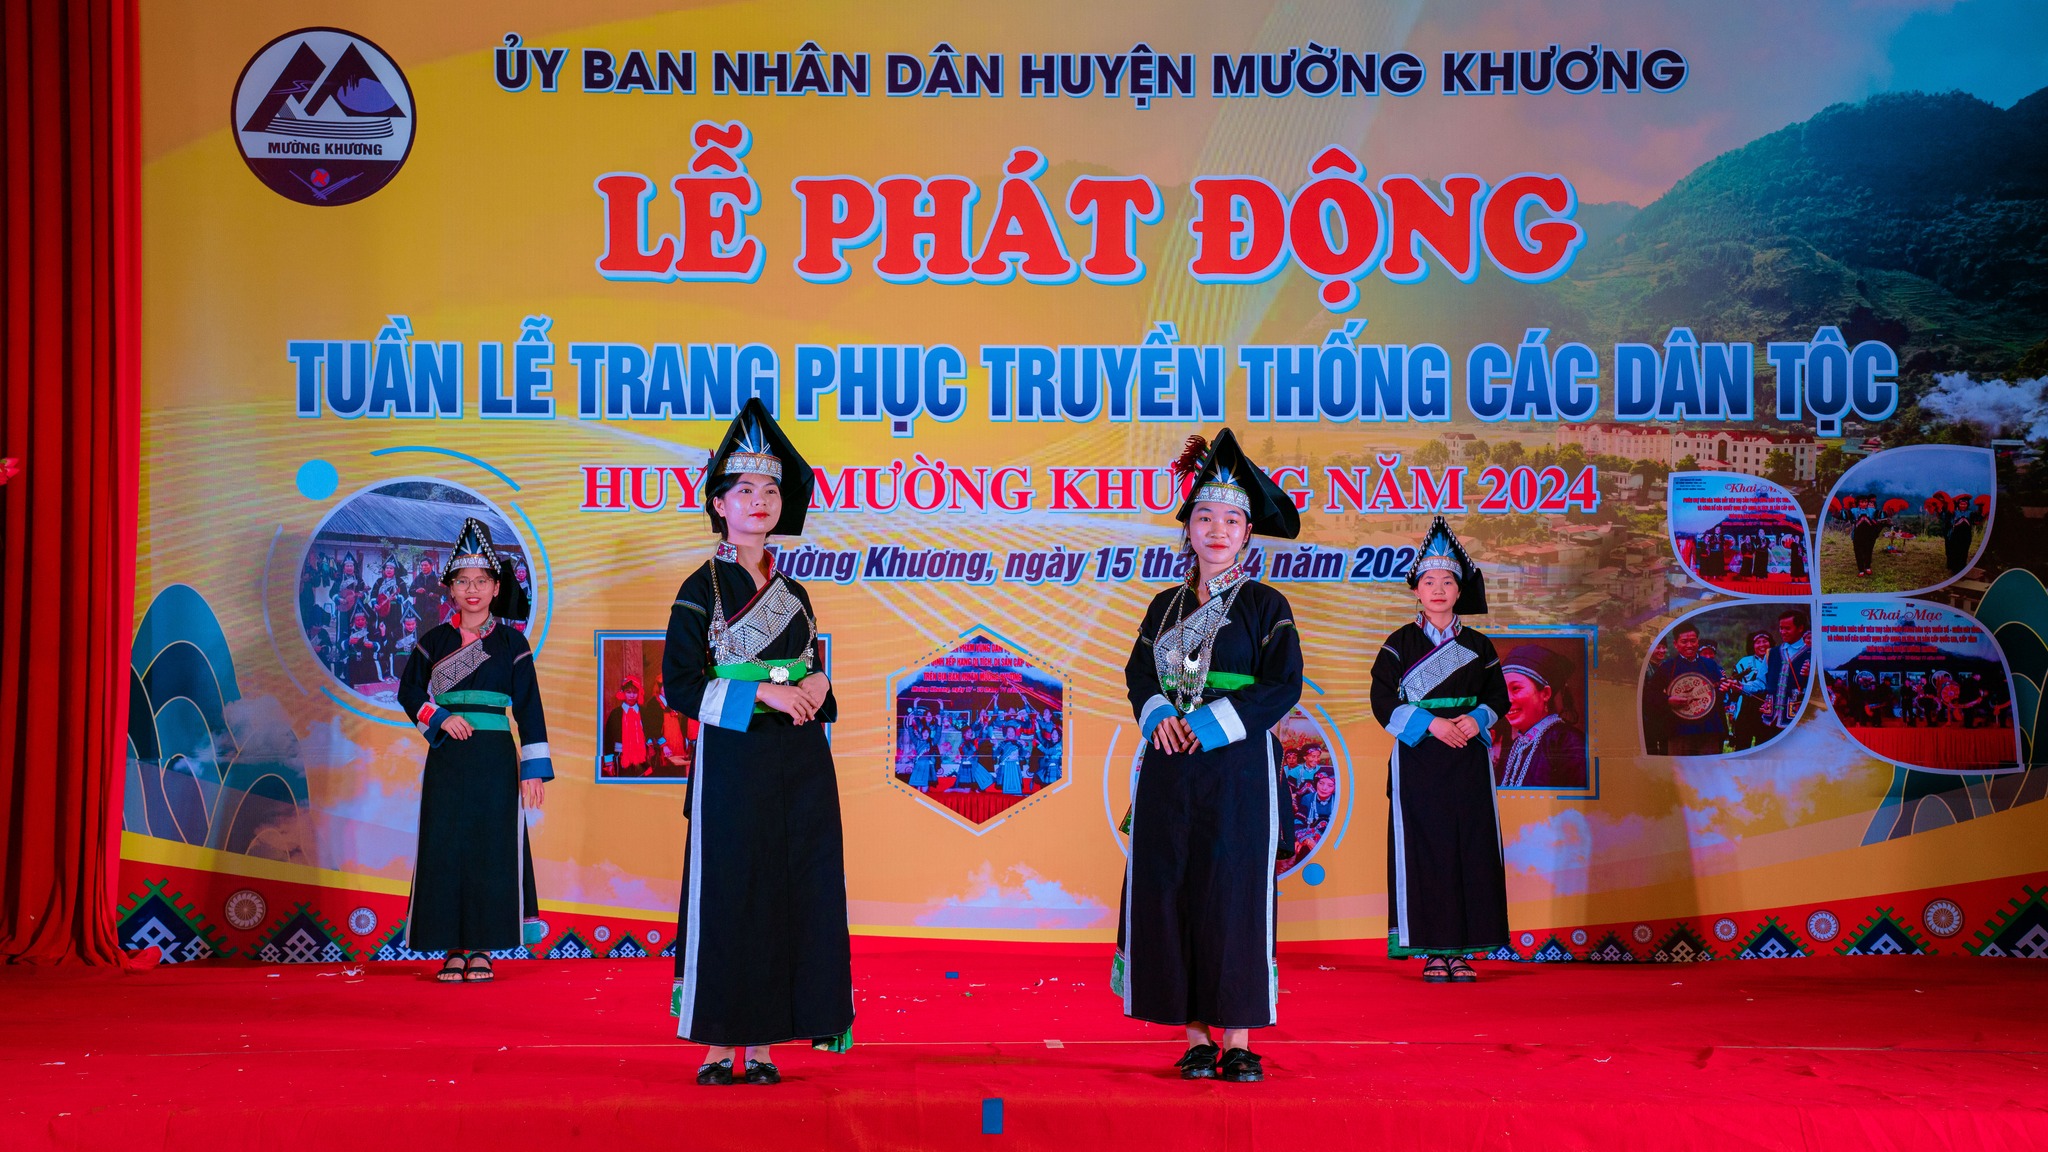 Tôn vinh nét đẹp, giá trị văn hóa trang phục các dân tộc Lào Cai- Ảnh 8.